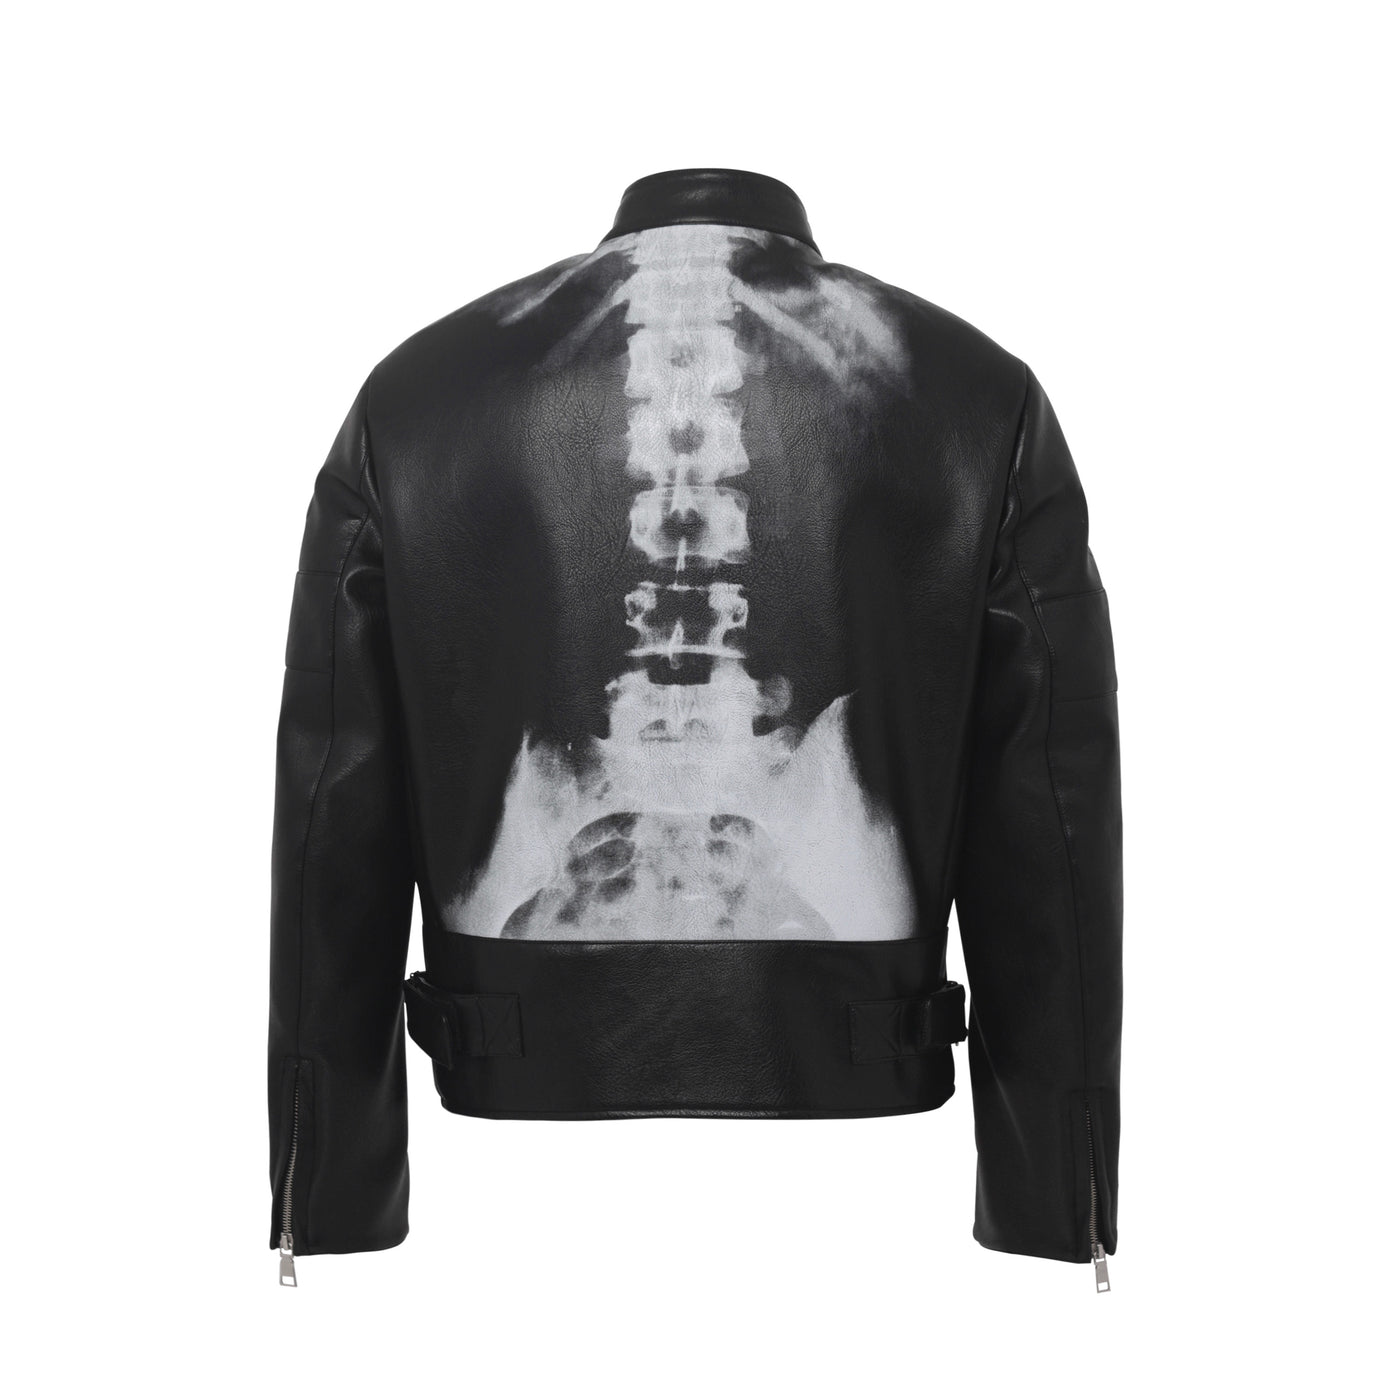 DONCARE(AFGK) "X-Ray Biker Jacket" - Black